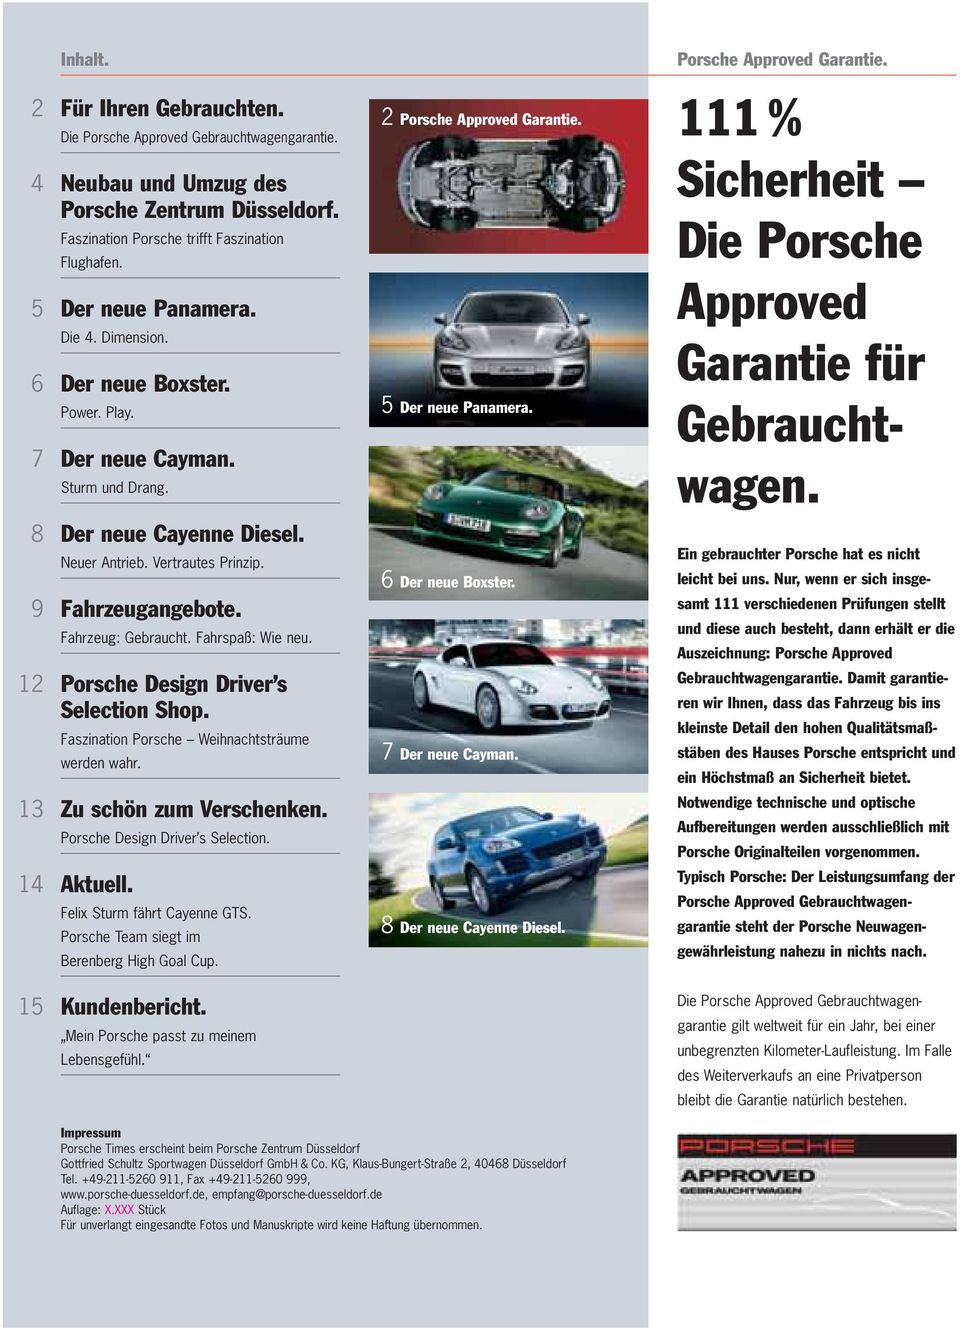 Fahrspaß: Wie neu. 12 Porsche Design Driver s Selection Shop. Faszination Porsche Weihnachtsträume werden wahr. 13 Zu schön zum Verschenken. Porsche Design Driver s Selection. 14 Aktuell.